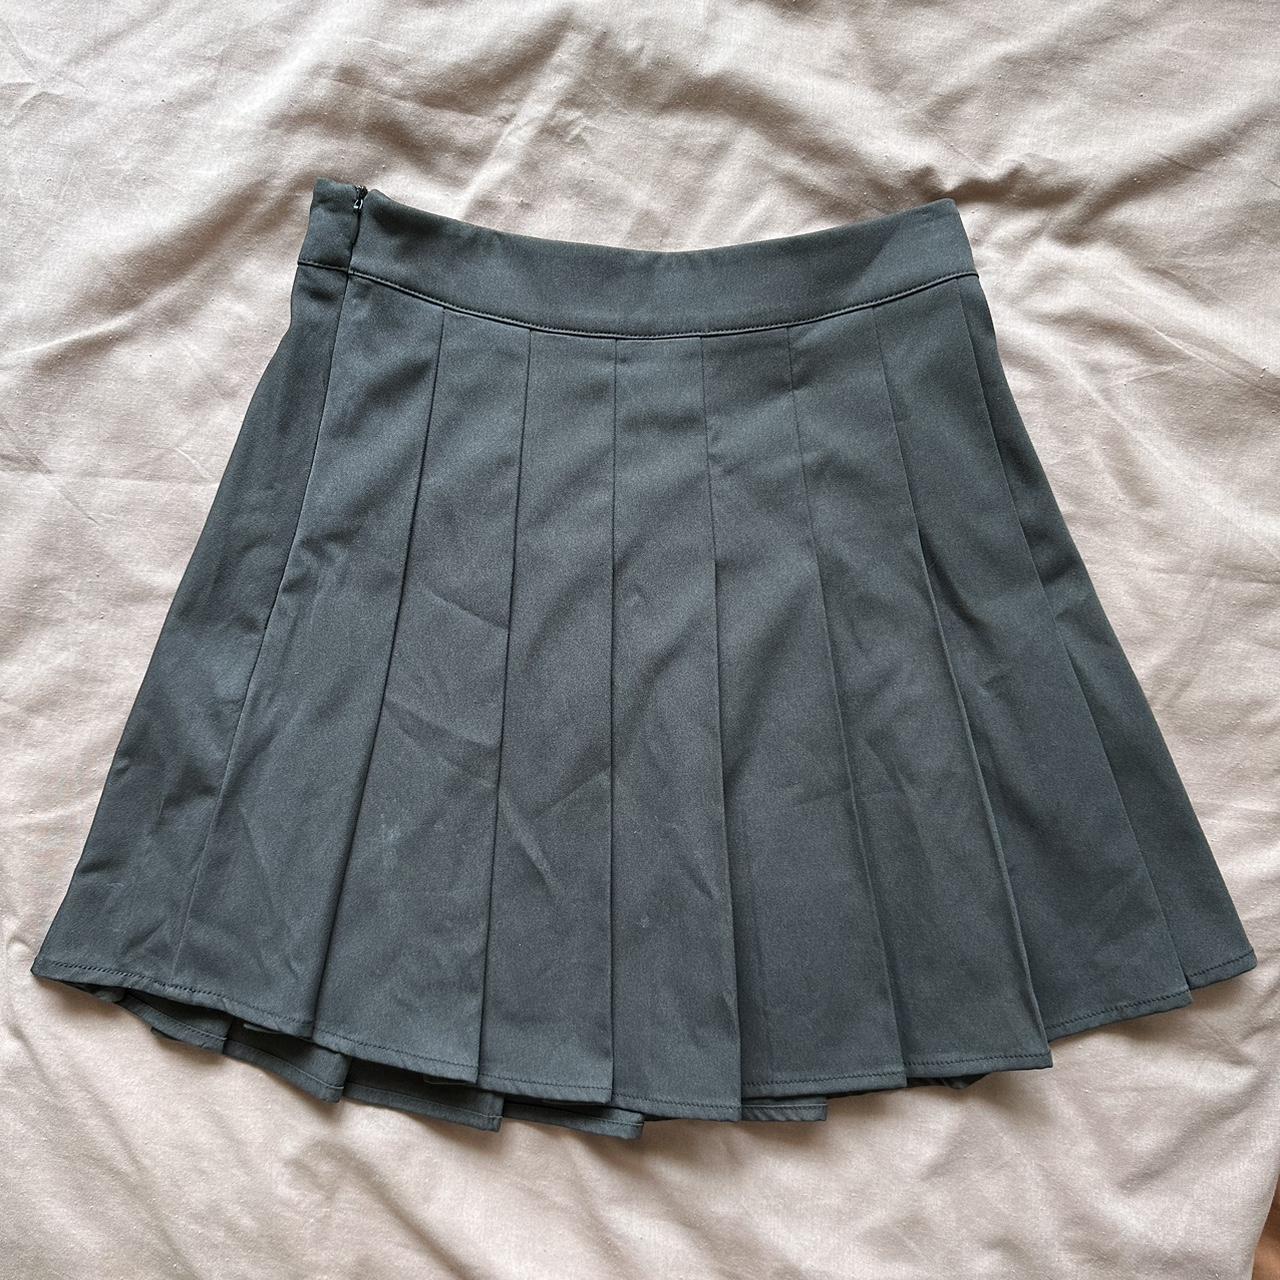 Grey and Black Skirt Bundle/Set 🛍️ Both skirts have... - Depop